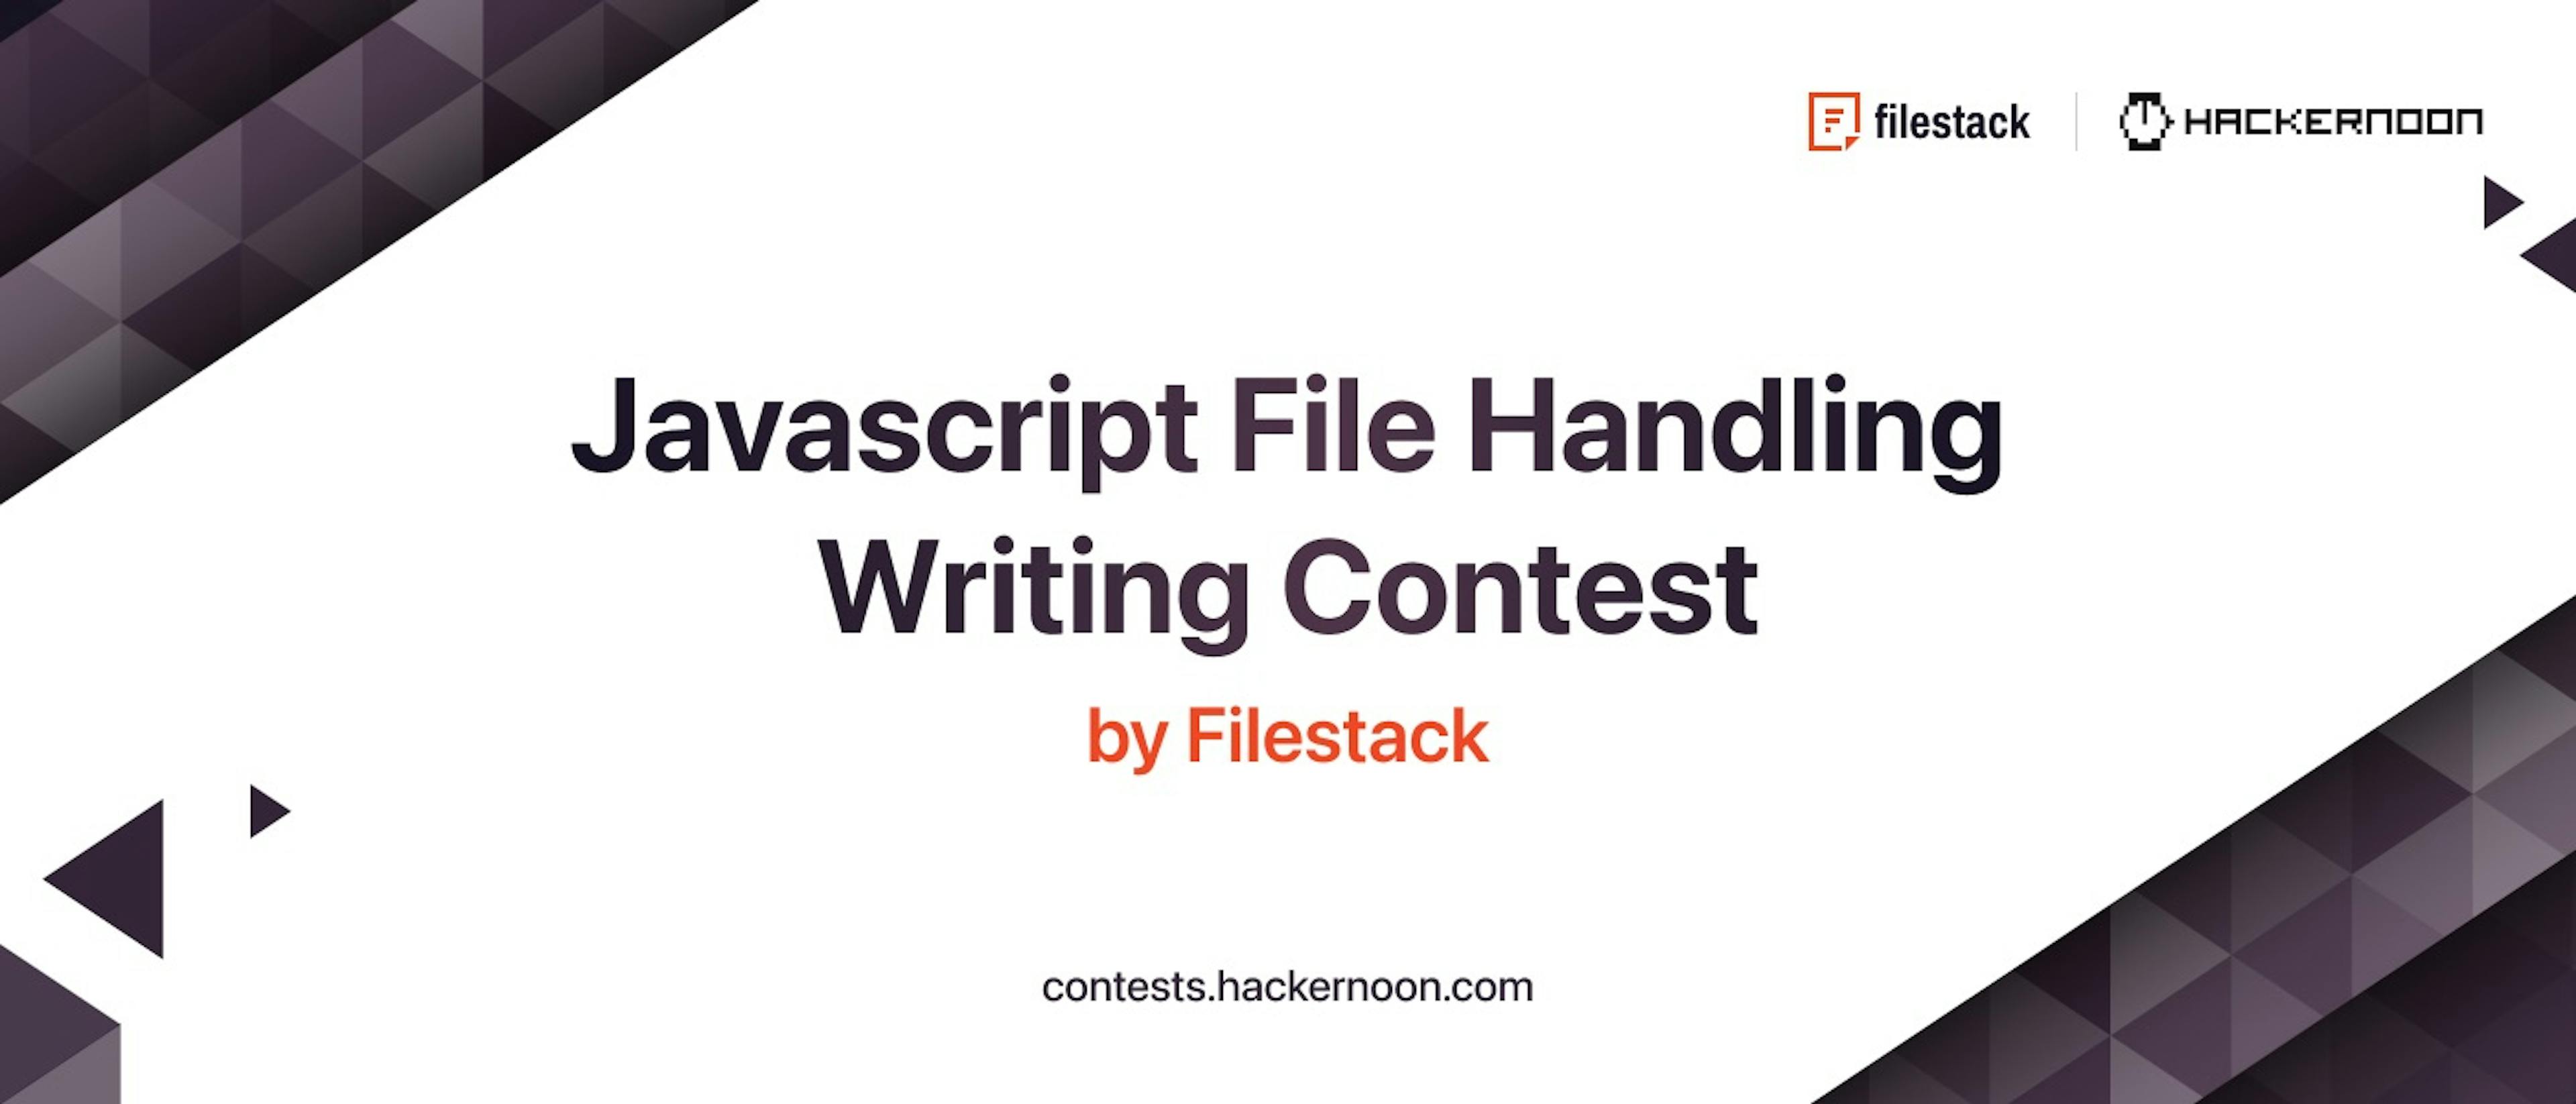 featured image - Concours d'écriture sur la gestion de fichiers Javascript par Filestack & HackerNoon